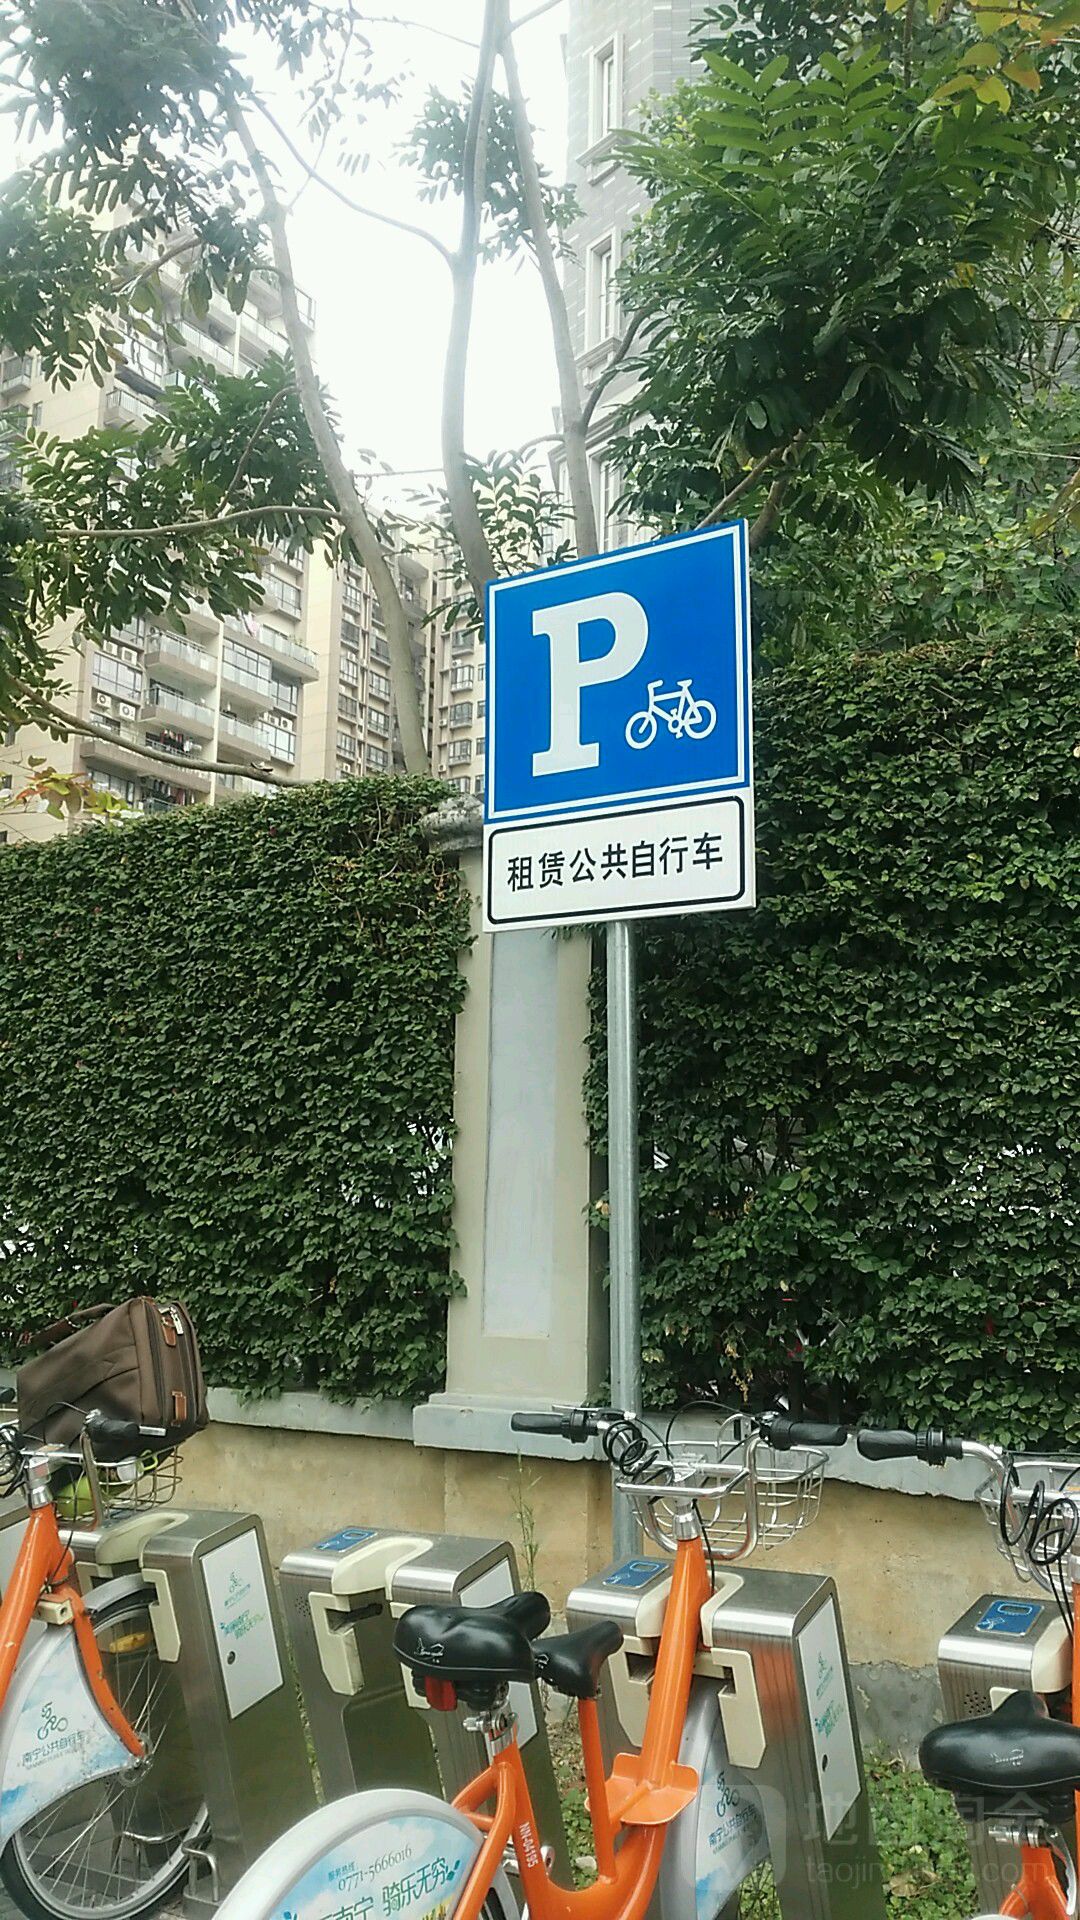 租賃公共自行車P